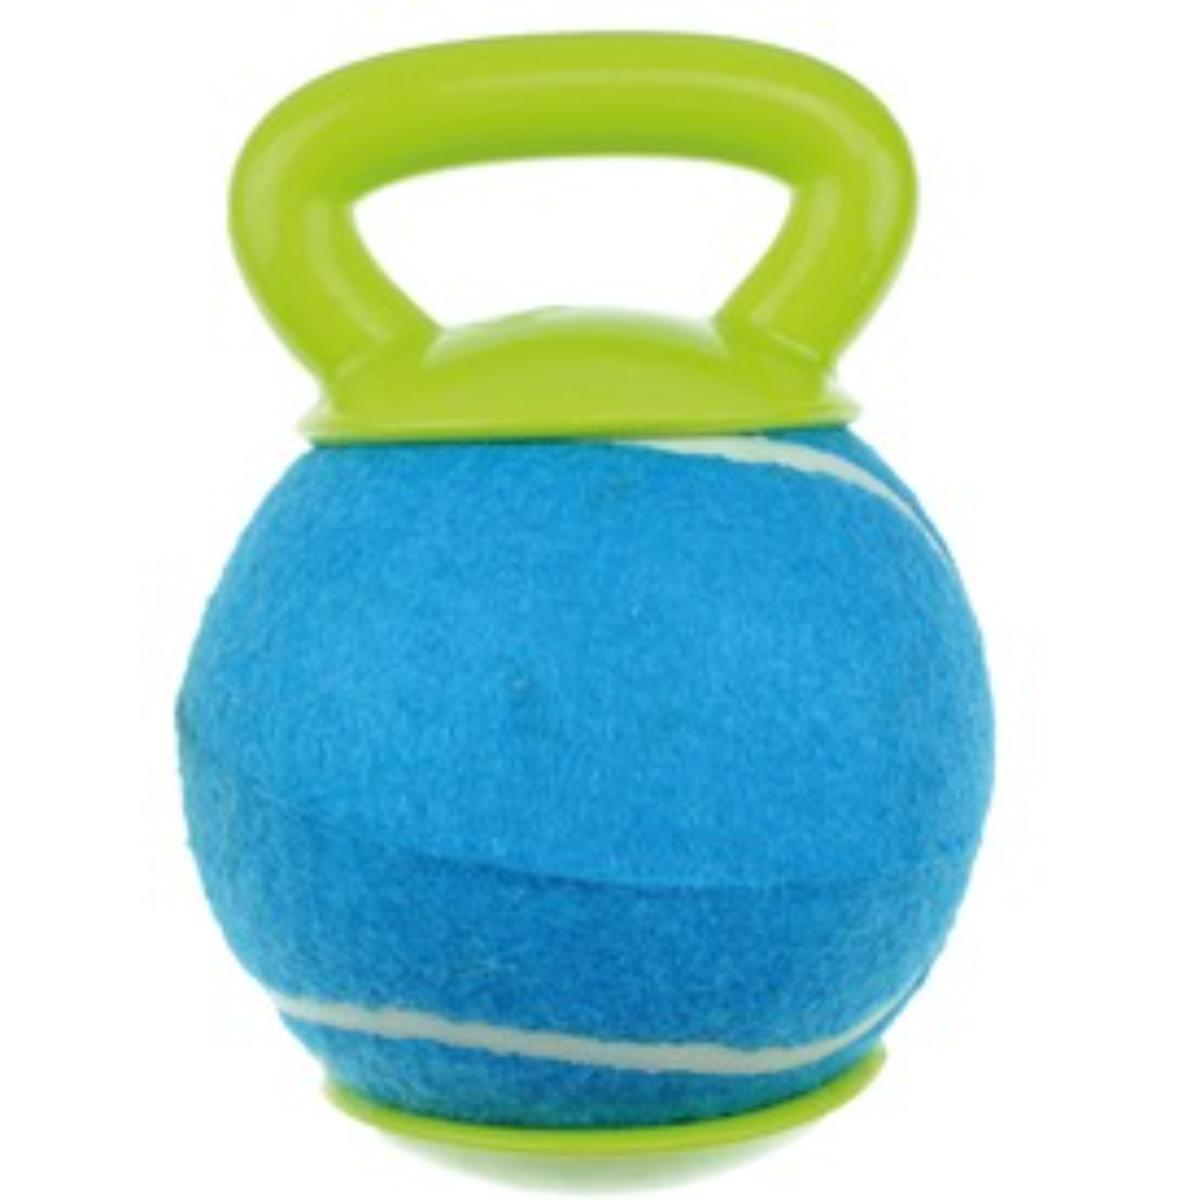 M-PETS Baggy, jucărie minge câini, activități fizice, cauciuc M-PETS Baggy, jucărie minge câini S-L, activități fizice, cauciuc, verde și albastru, ⌀18.4cm